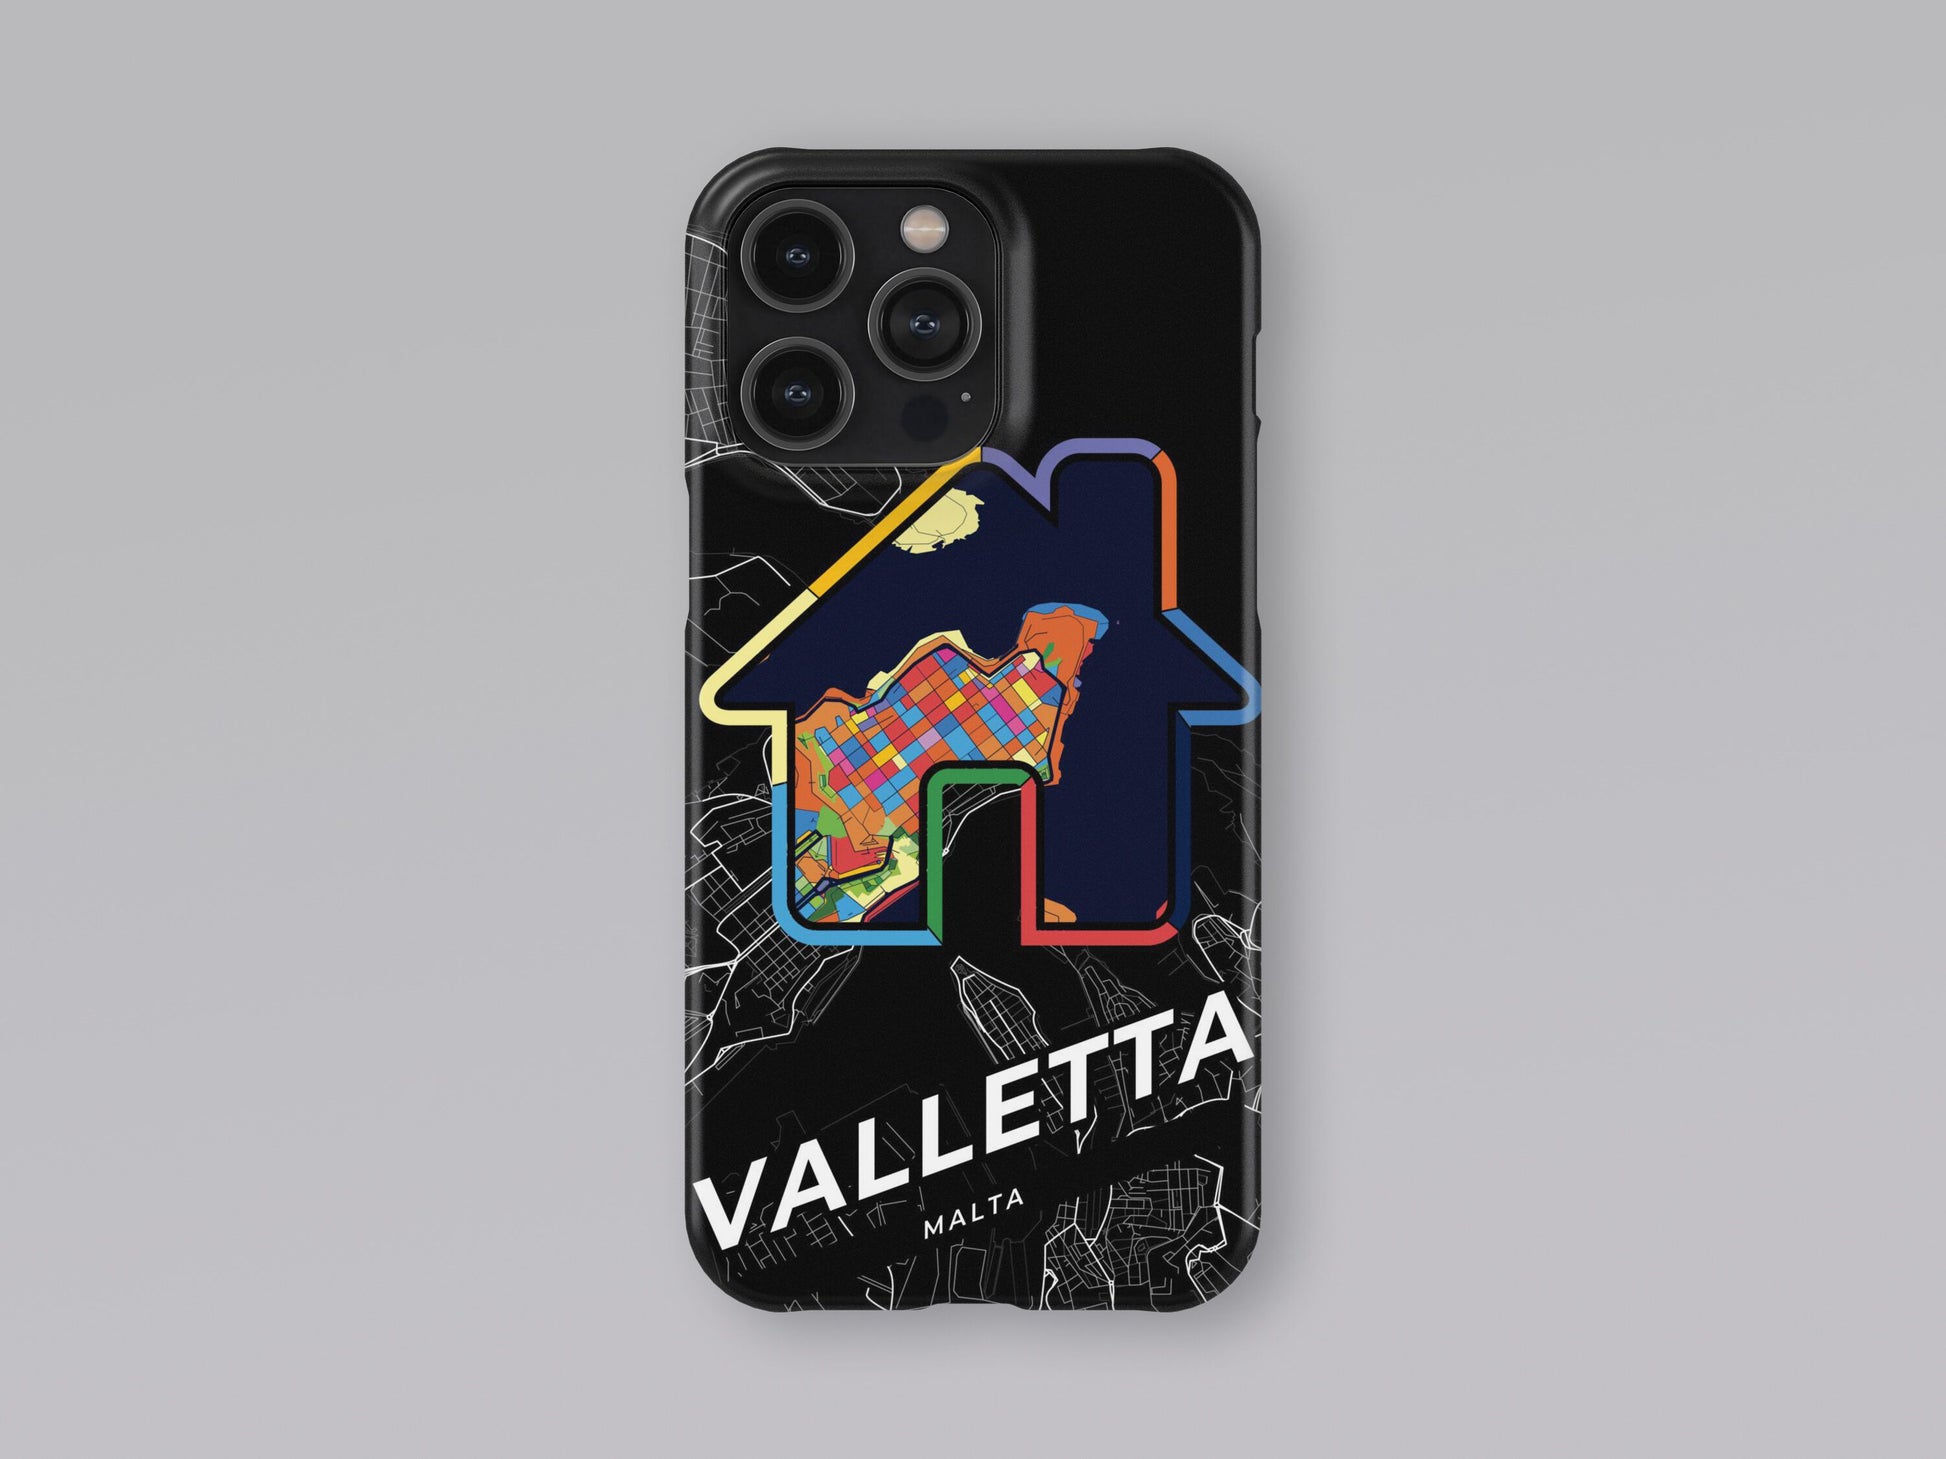 Valletta Malta slim phone case with colorful icon 3